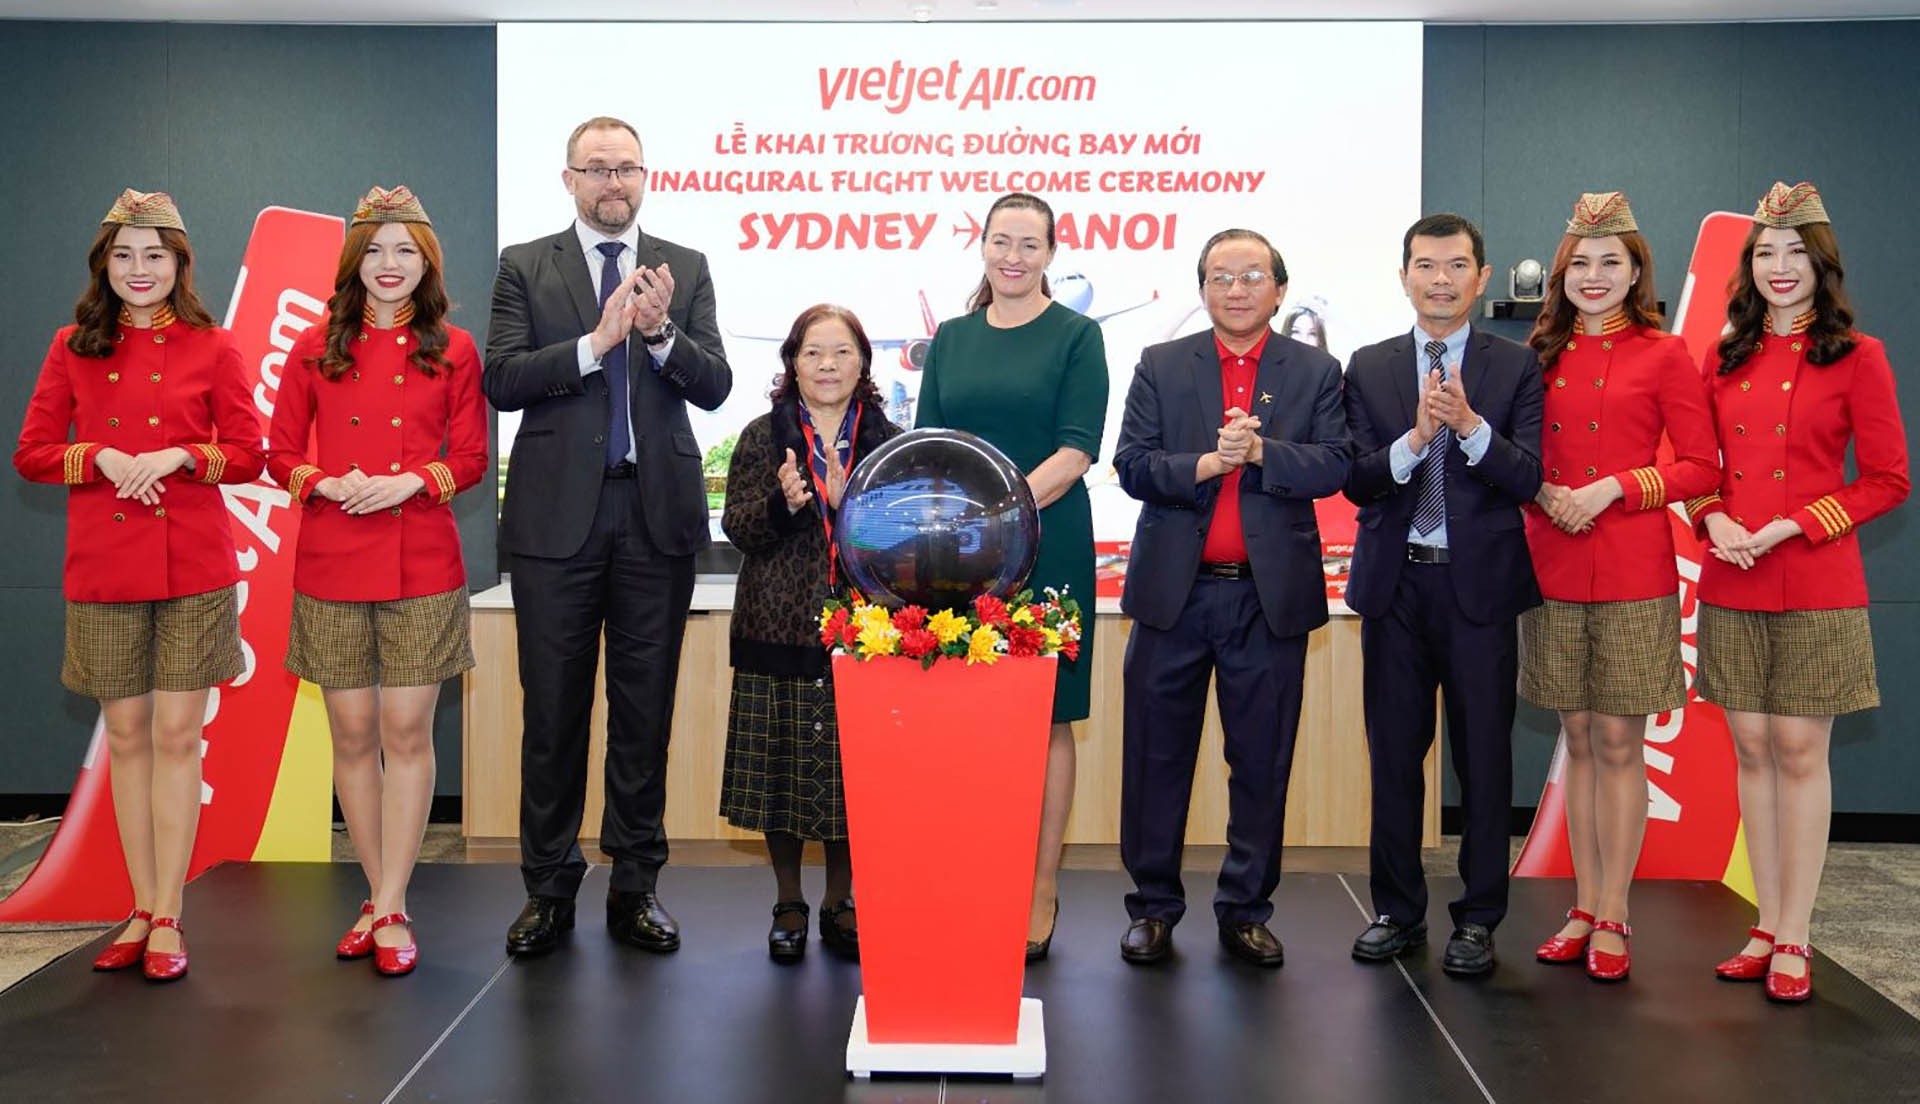 Các đại biểu, khách mời chúc mừng khai trương đường bay Sydney - Hà Nội của Vietjet.